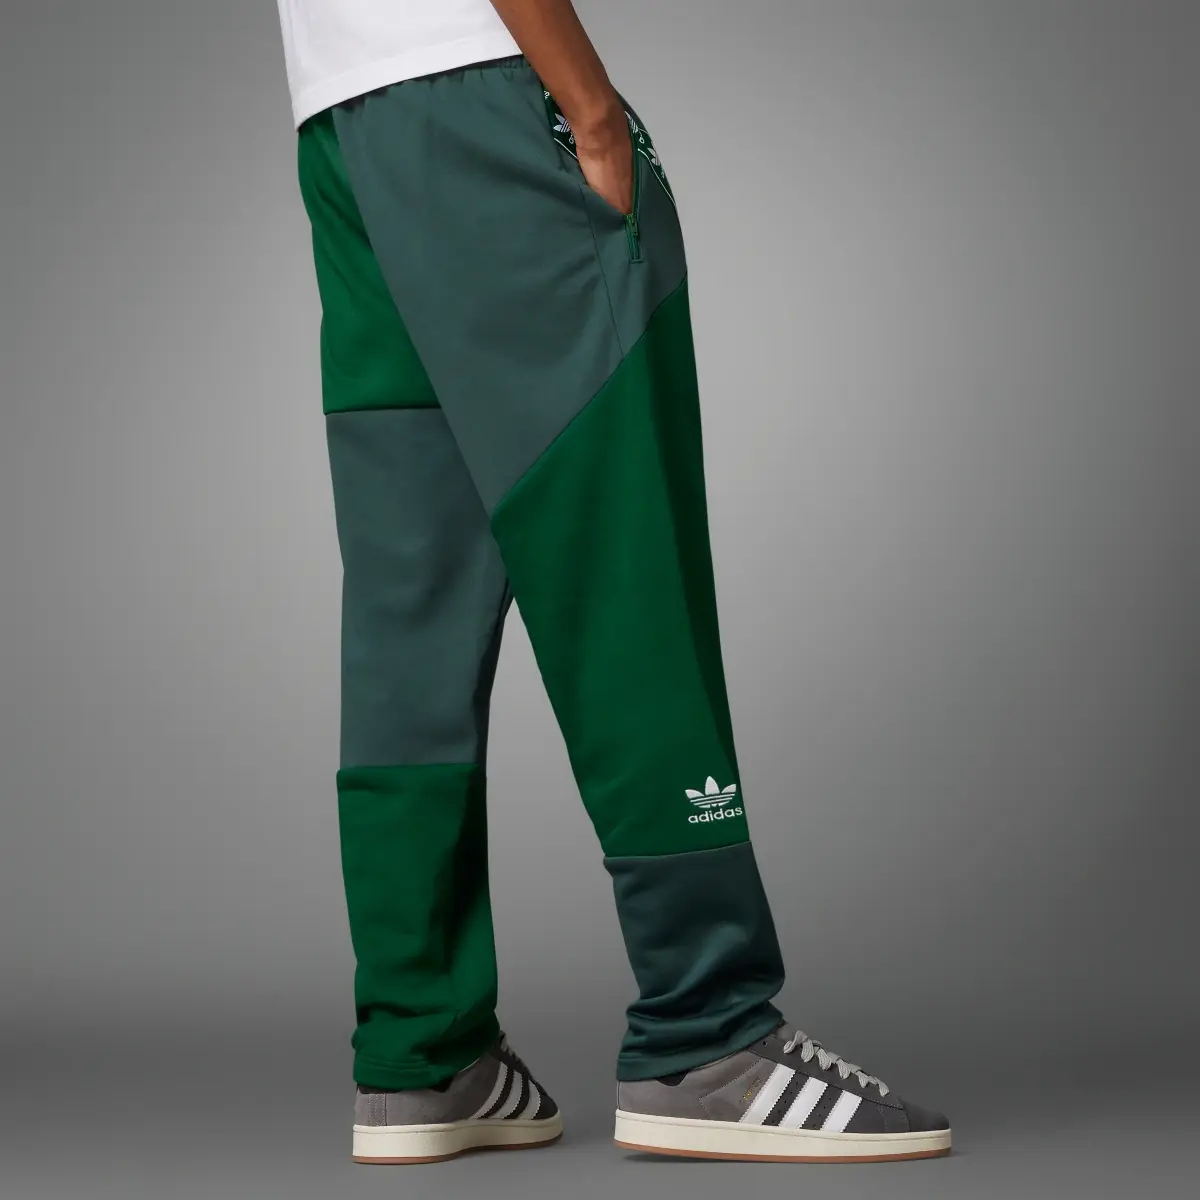 Adidas Pantalon de survêtement ADC Patchwork FB. 2